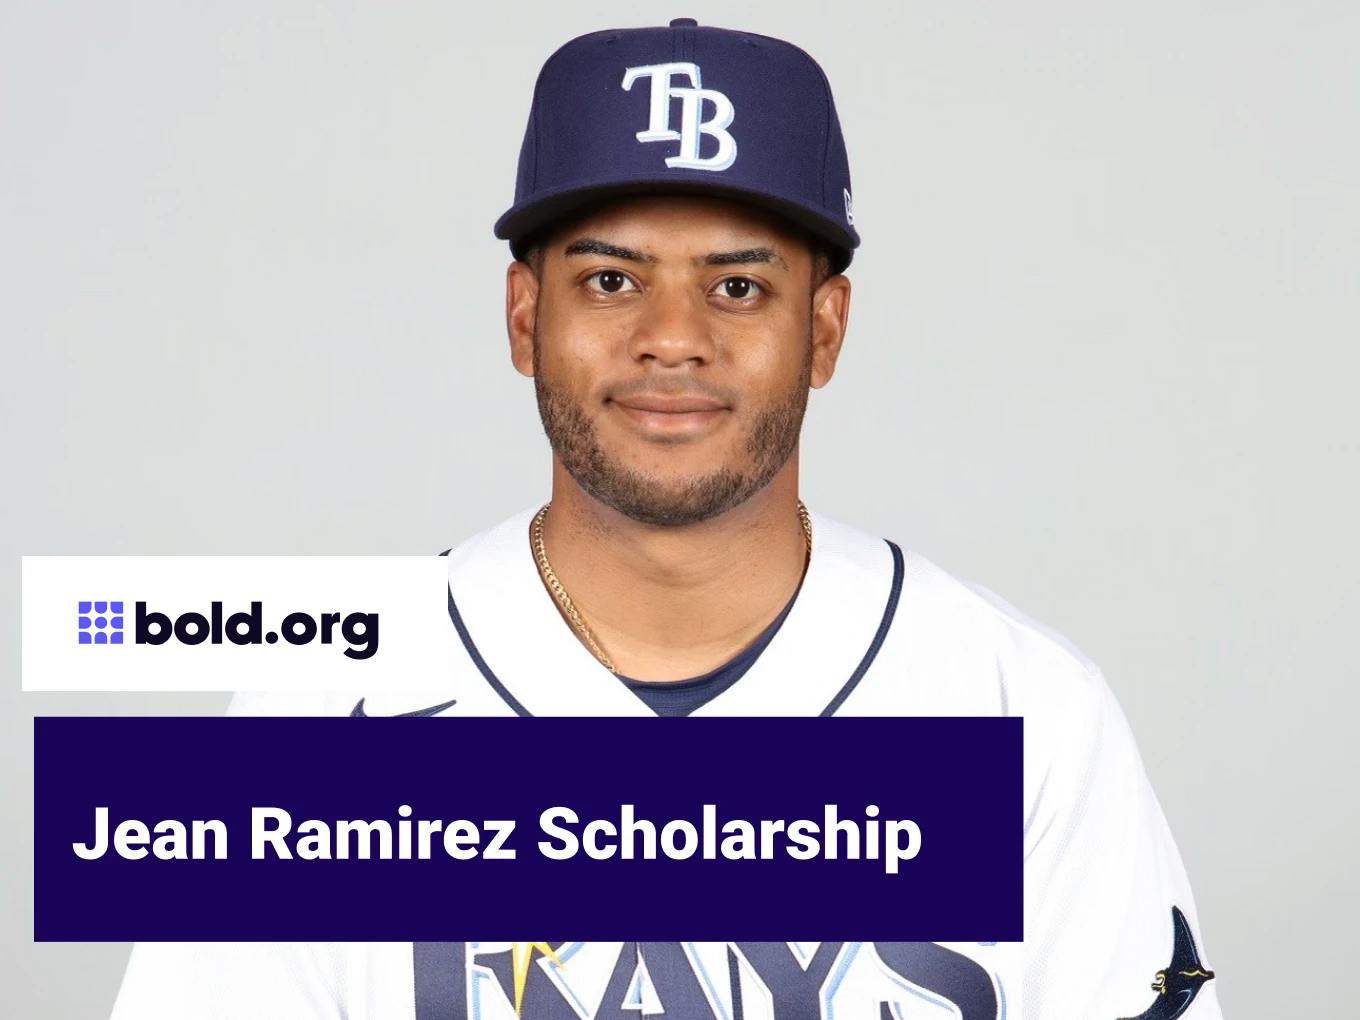 Jean Ramirez Scholarship